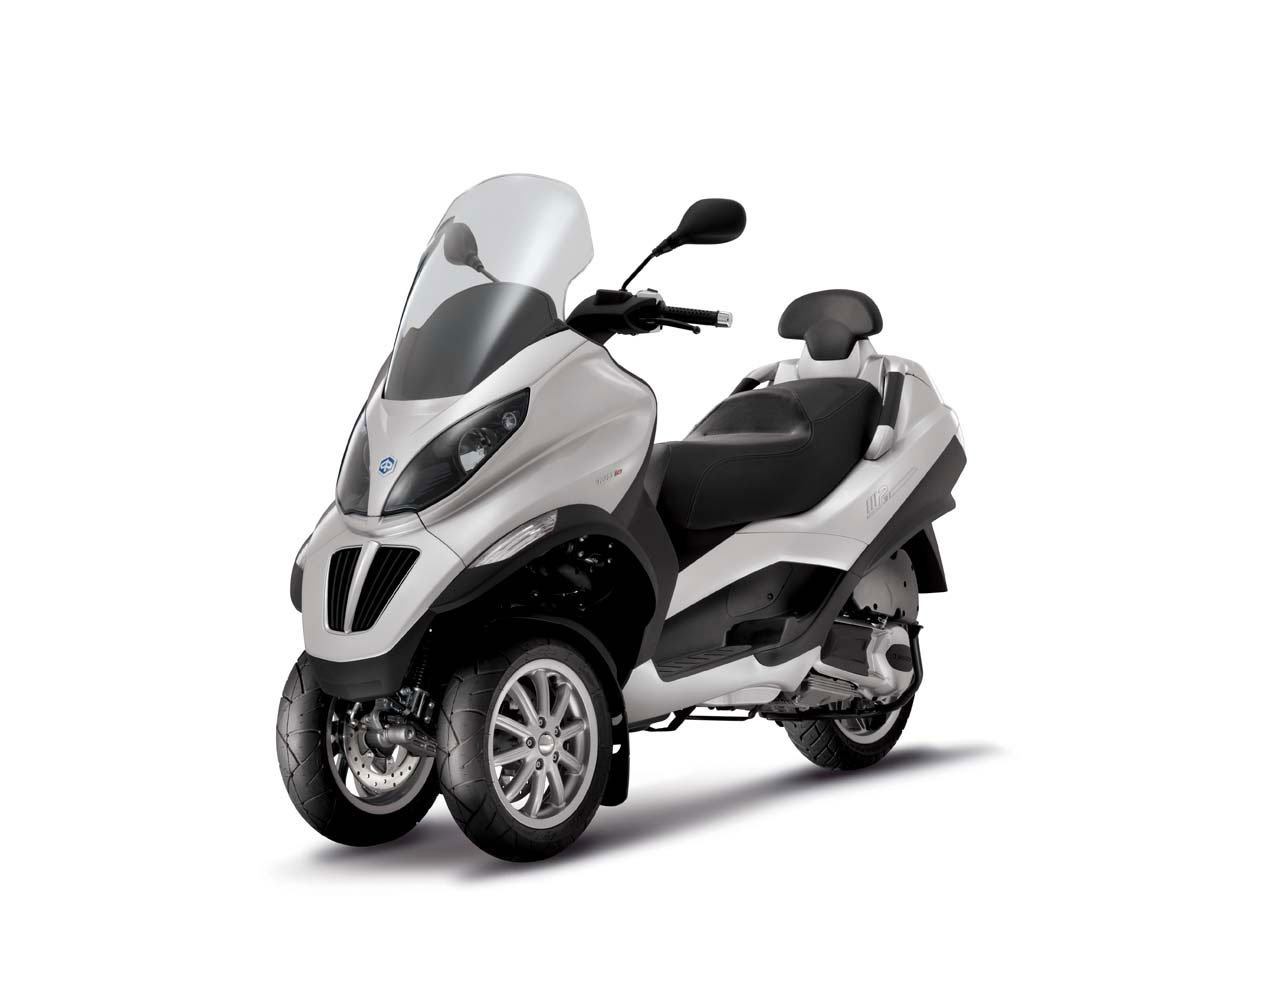 Listino Piaggio X 10 125 Scooter 125 - image 15108_piaggio-mp3300-ie-yourban-sport on https://moto.motori.net